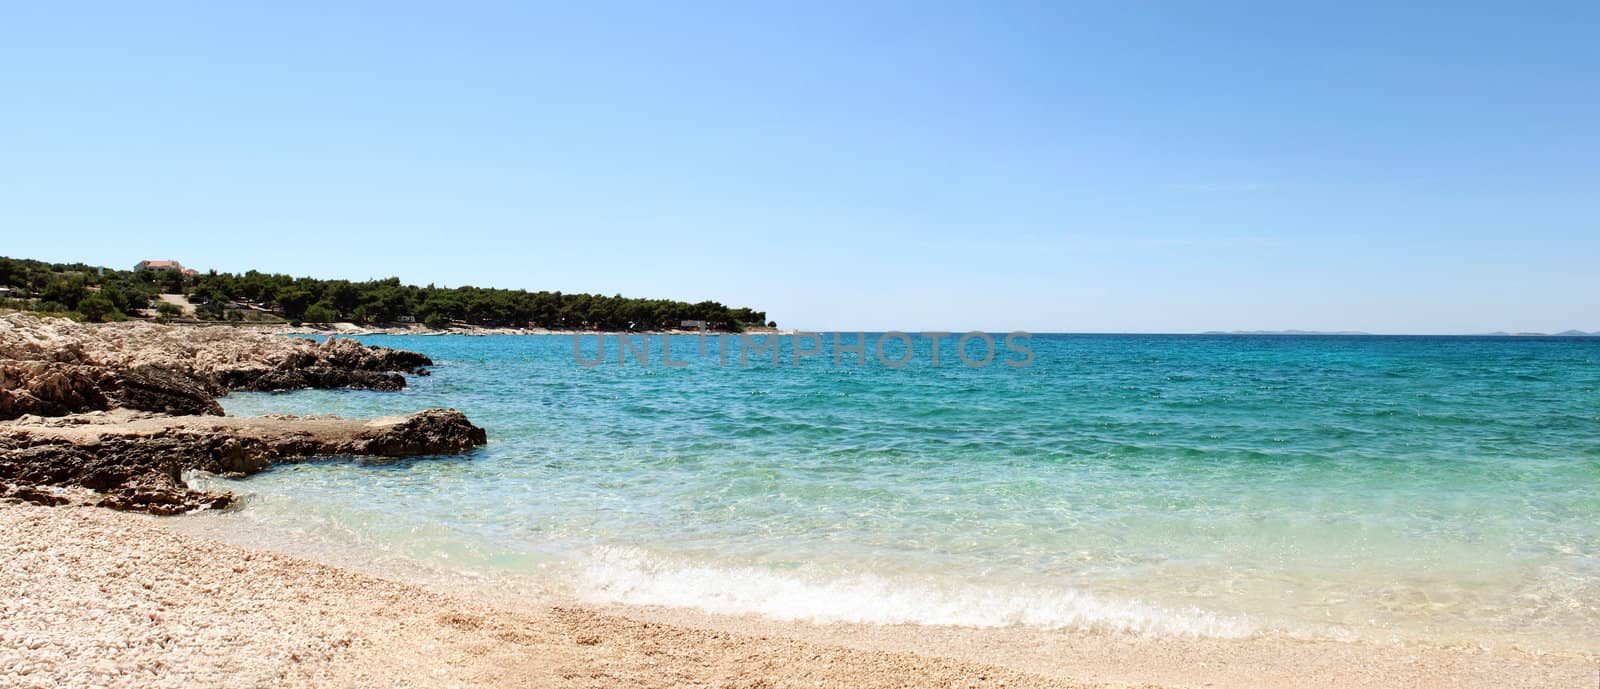 Panorama of beautiful beach in Croatia by artush